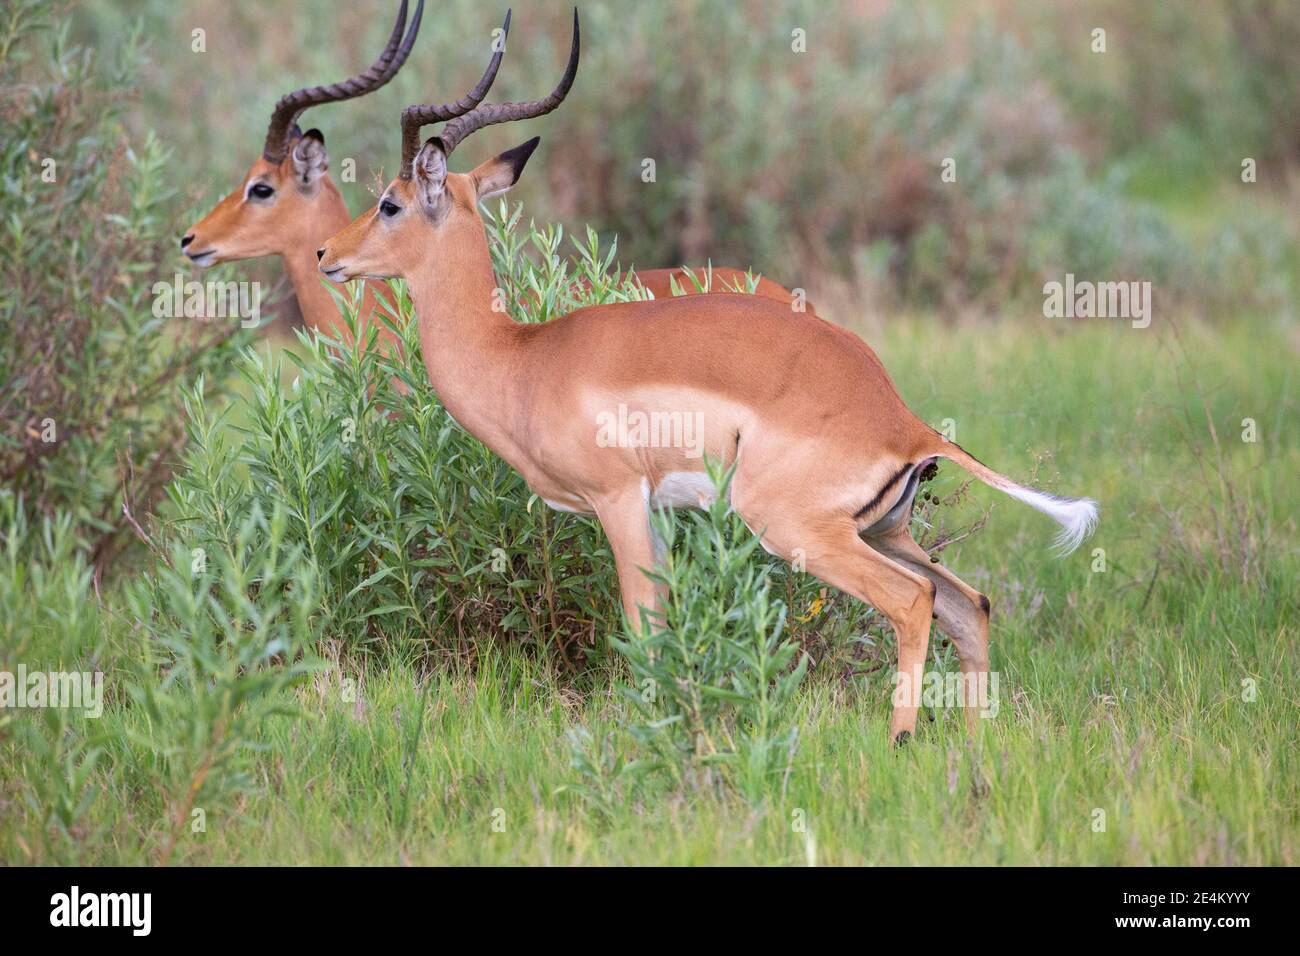 Impala (Aepyceros melampus). Squatting maschile con corna, defezioni, in forma di pellet. Essendo un erbivoro, poo conterrà digerito e parzialmente dige Foto Stock